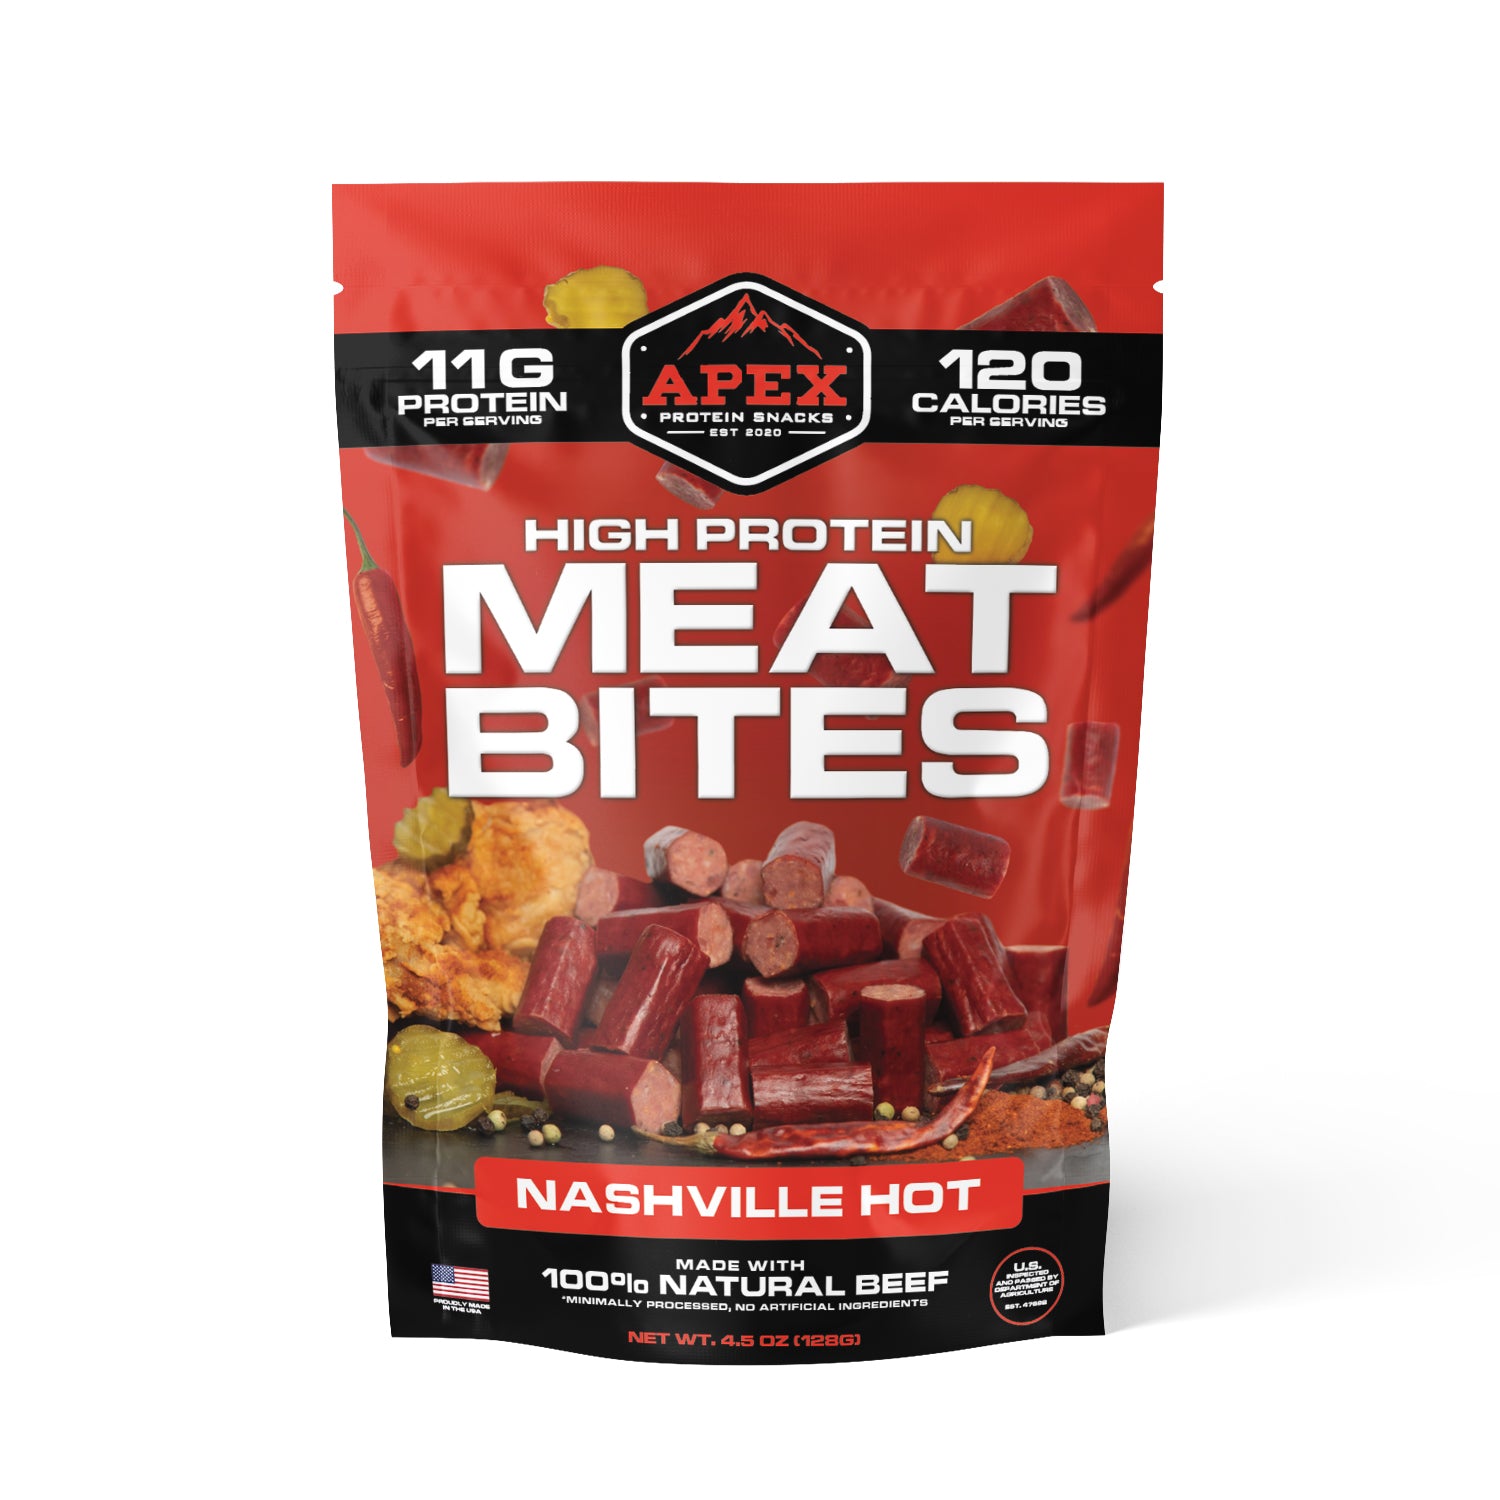 Nashville hot - Protein Meat Bites | Apex Protein Snacks